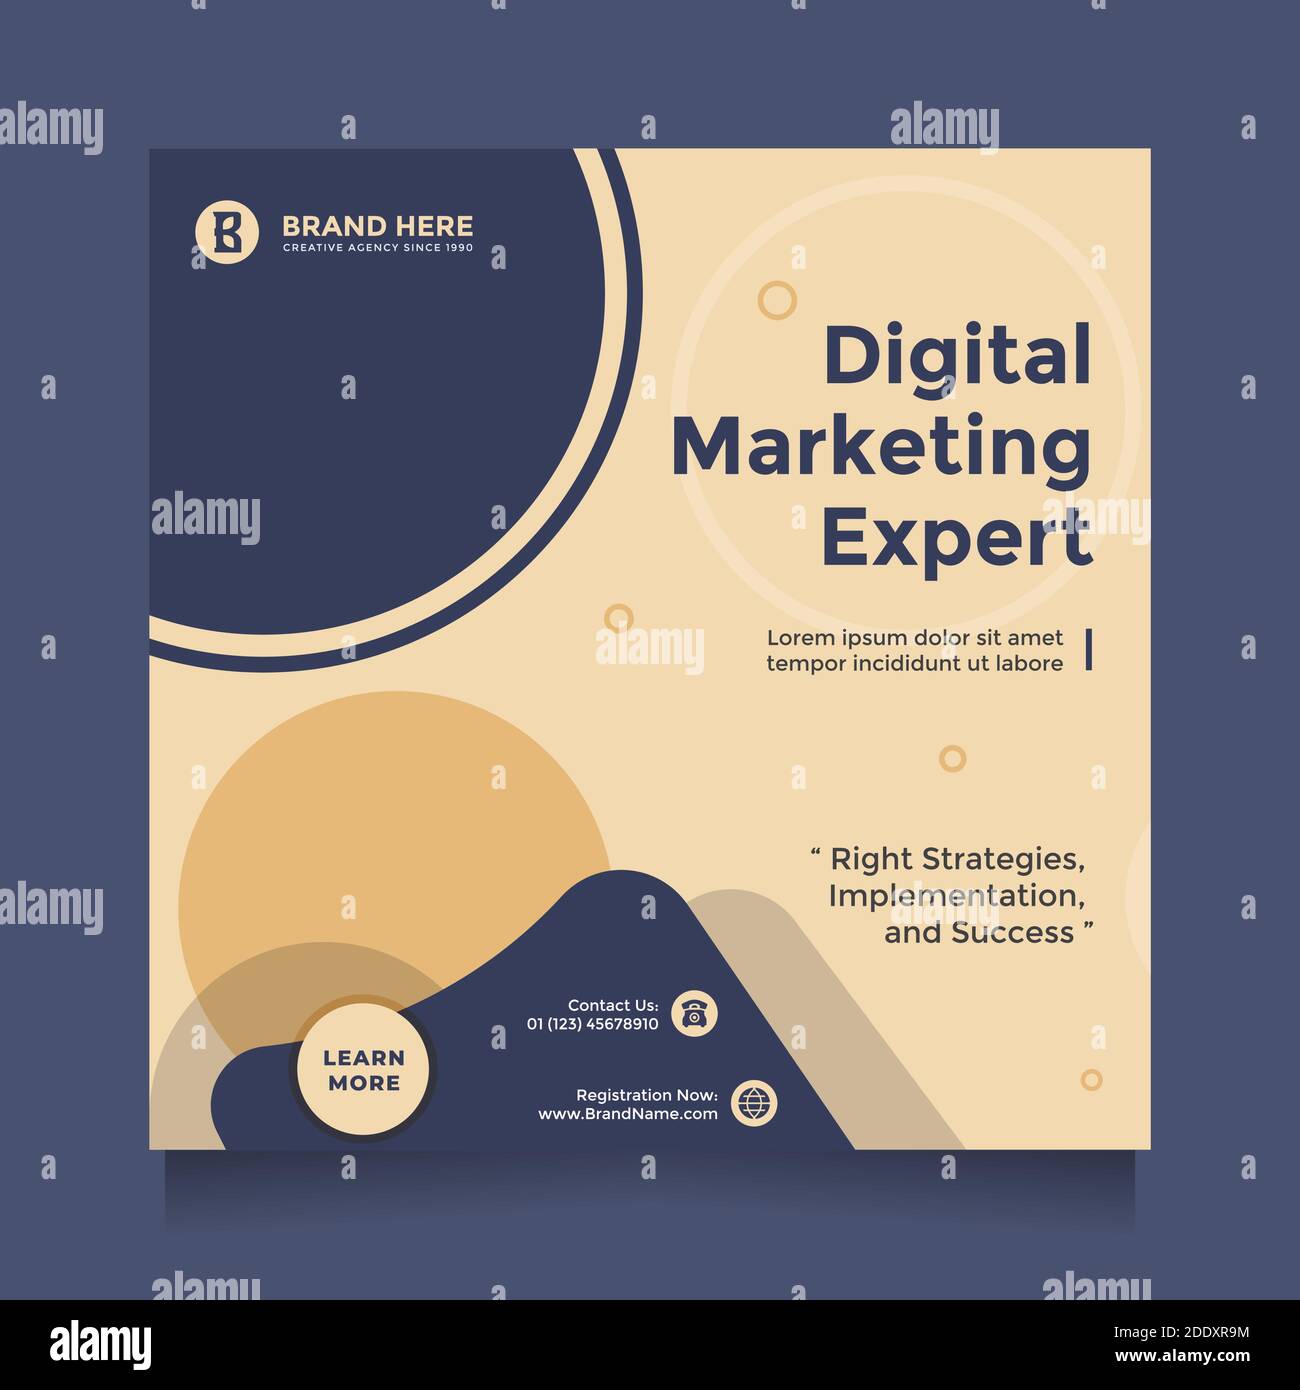 Digital marketing expert social media post design Vector Image